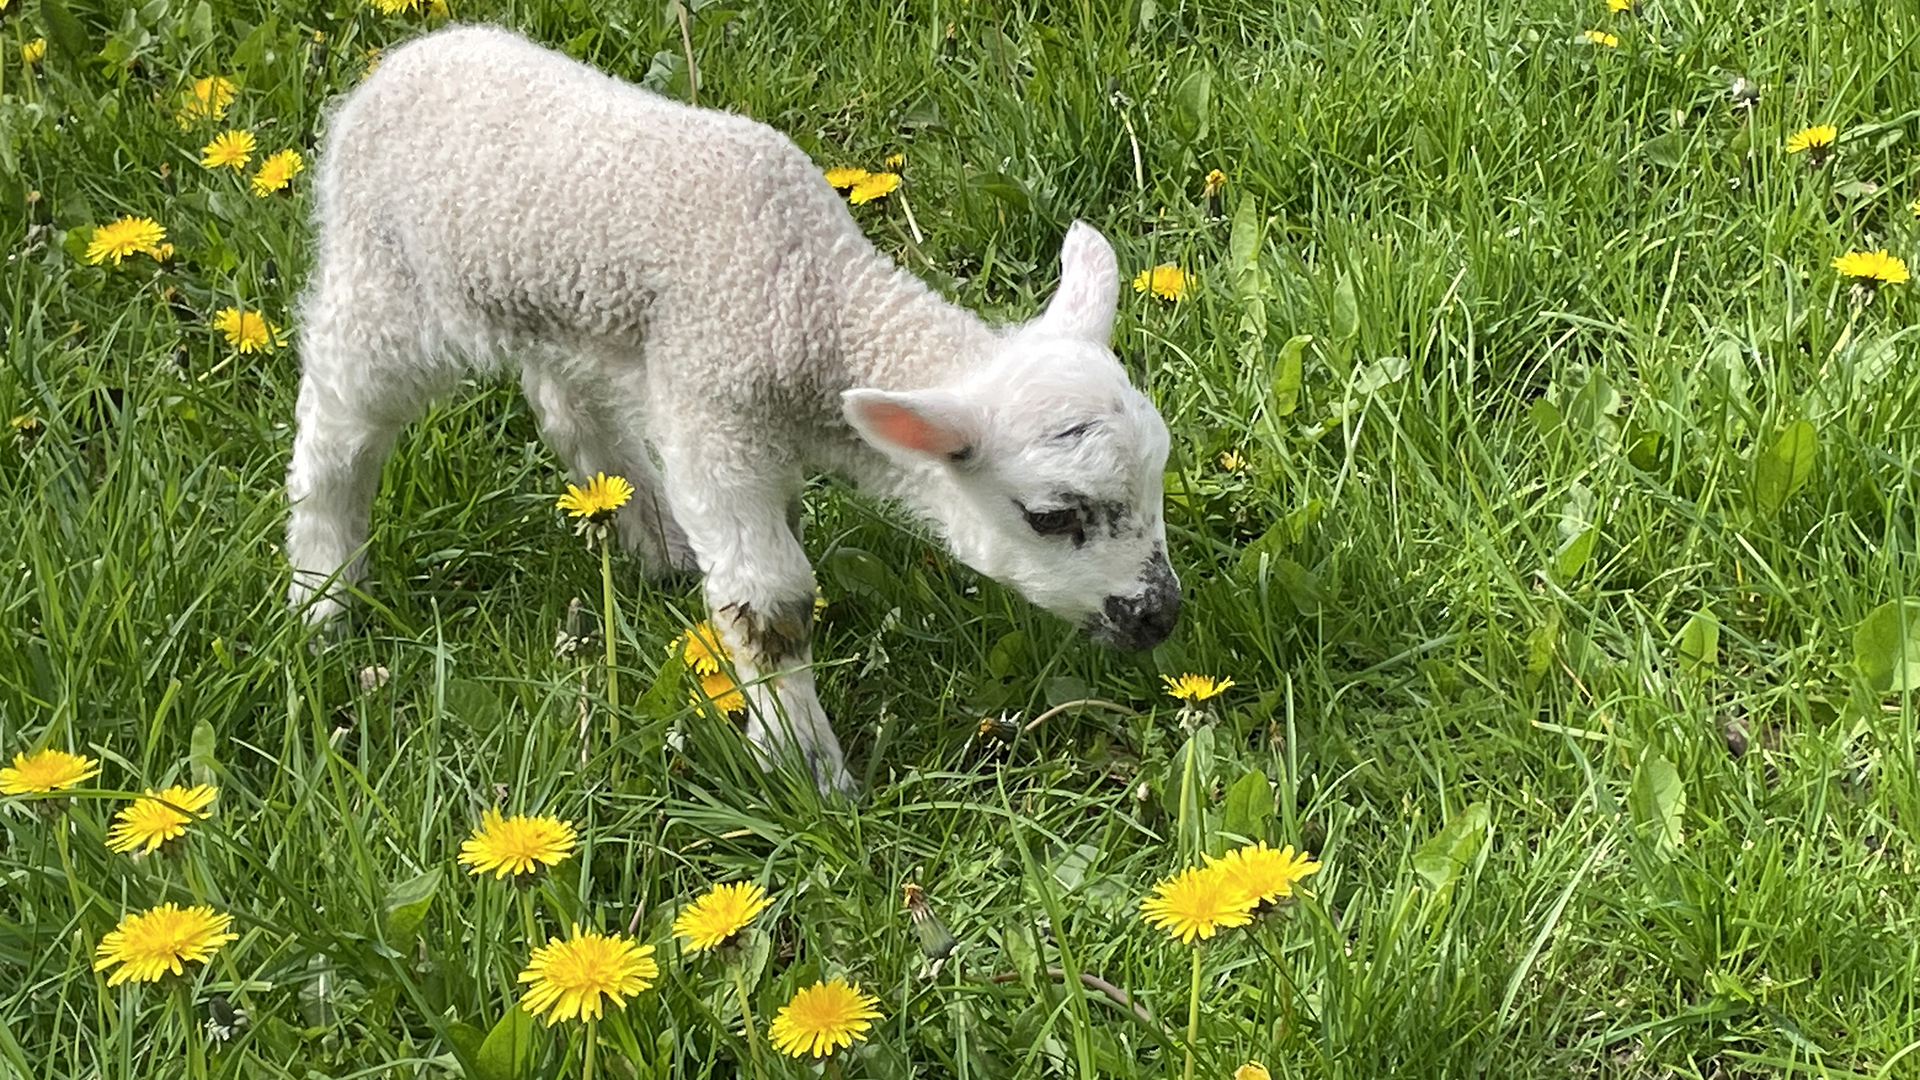 A lamb exploring its surroundings